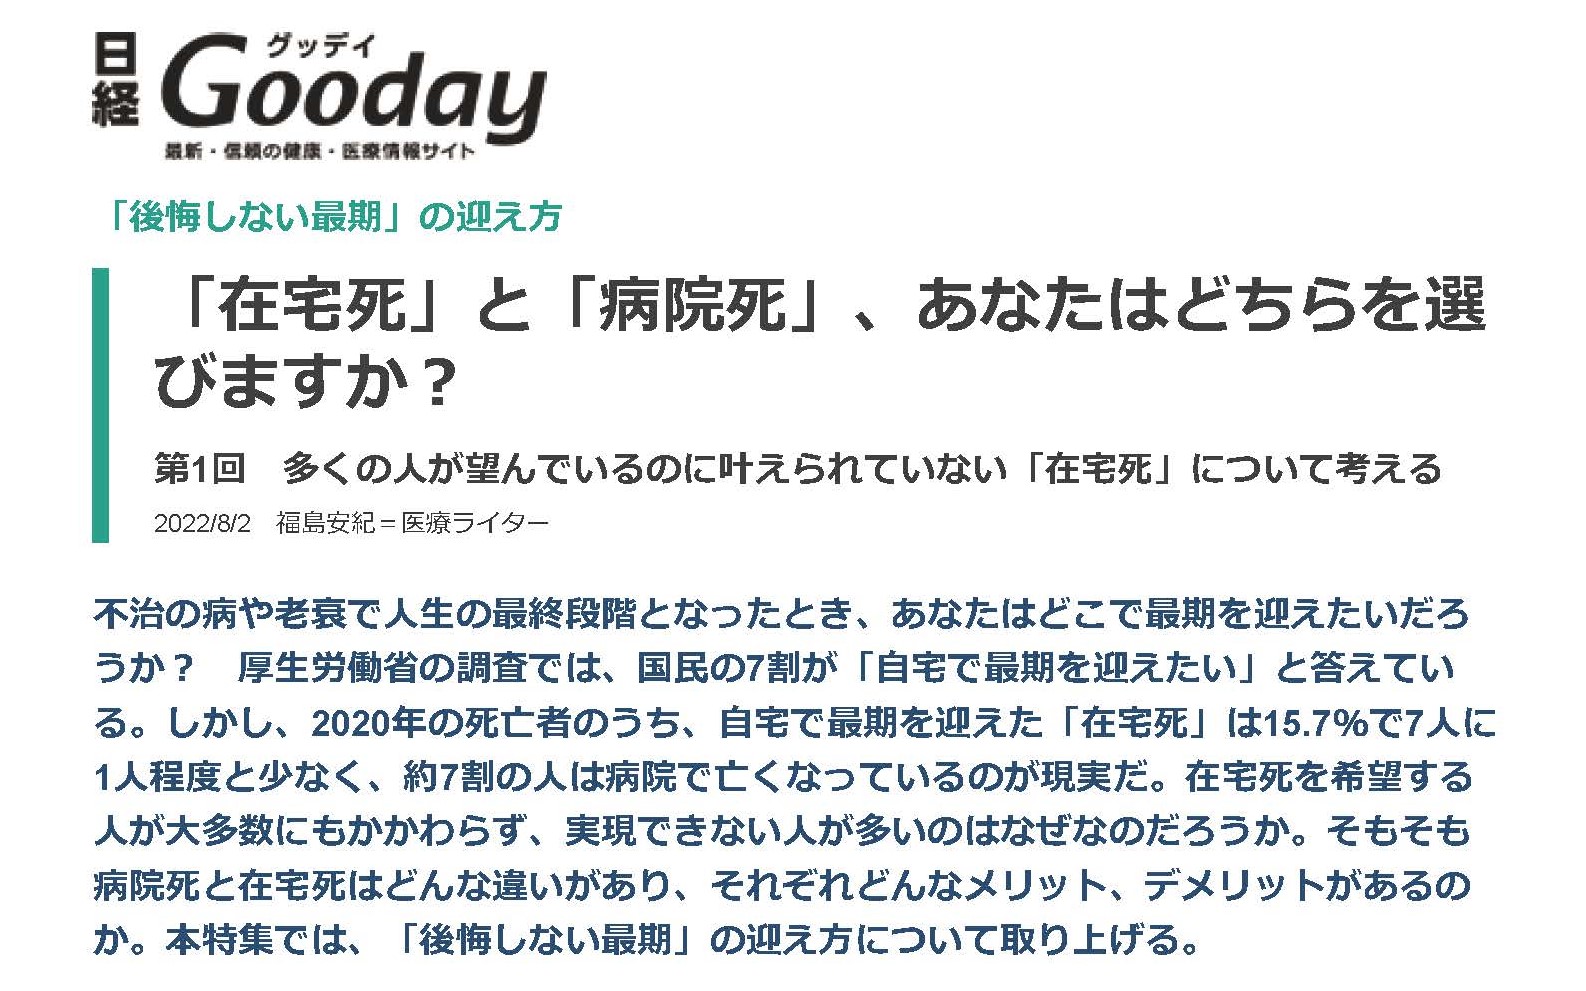 記事掲載のお知らせ（「日経Gooday」、8月2日）